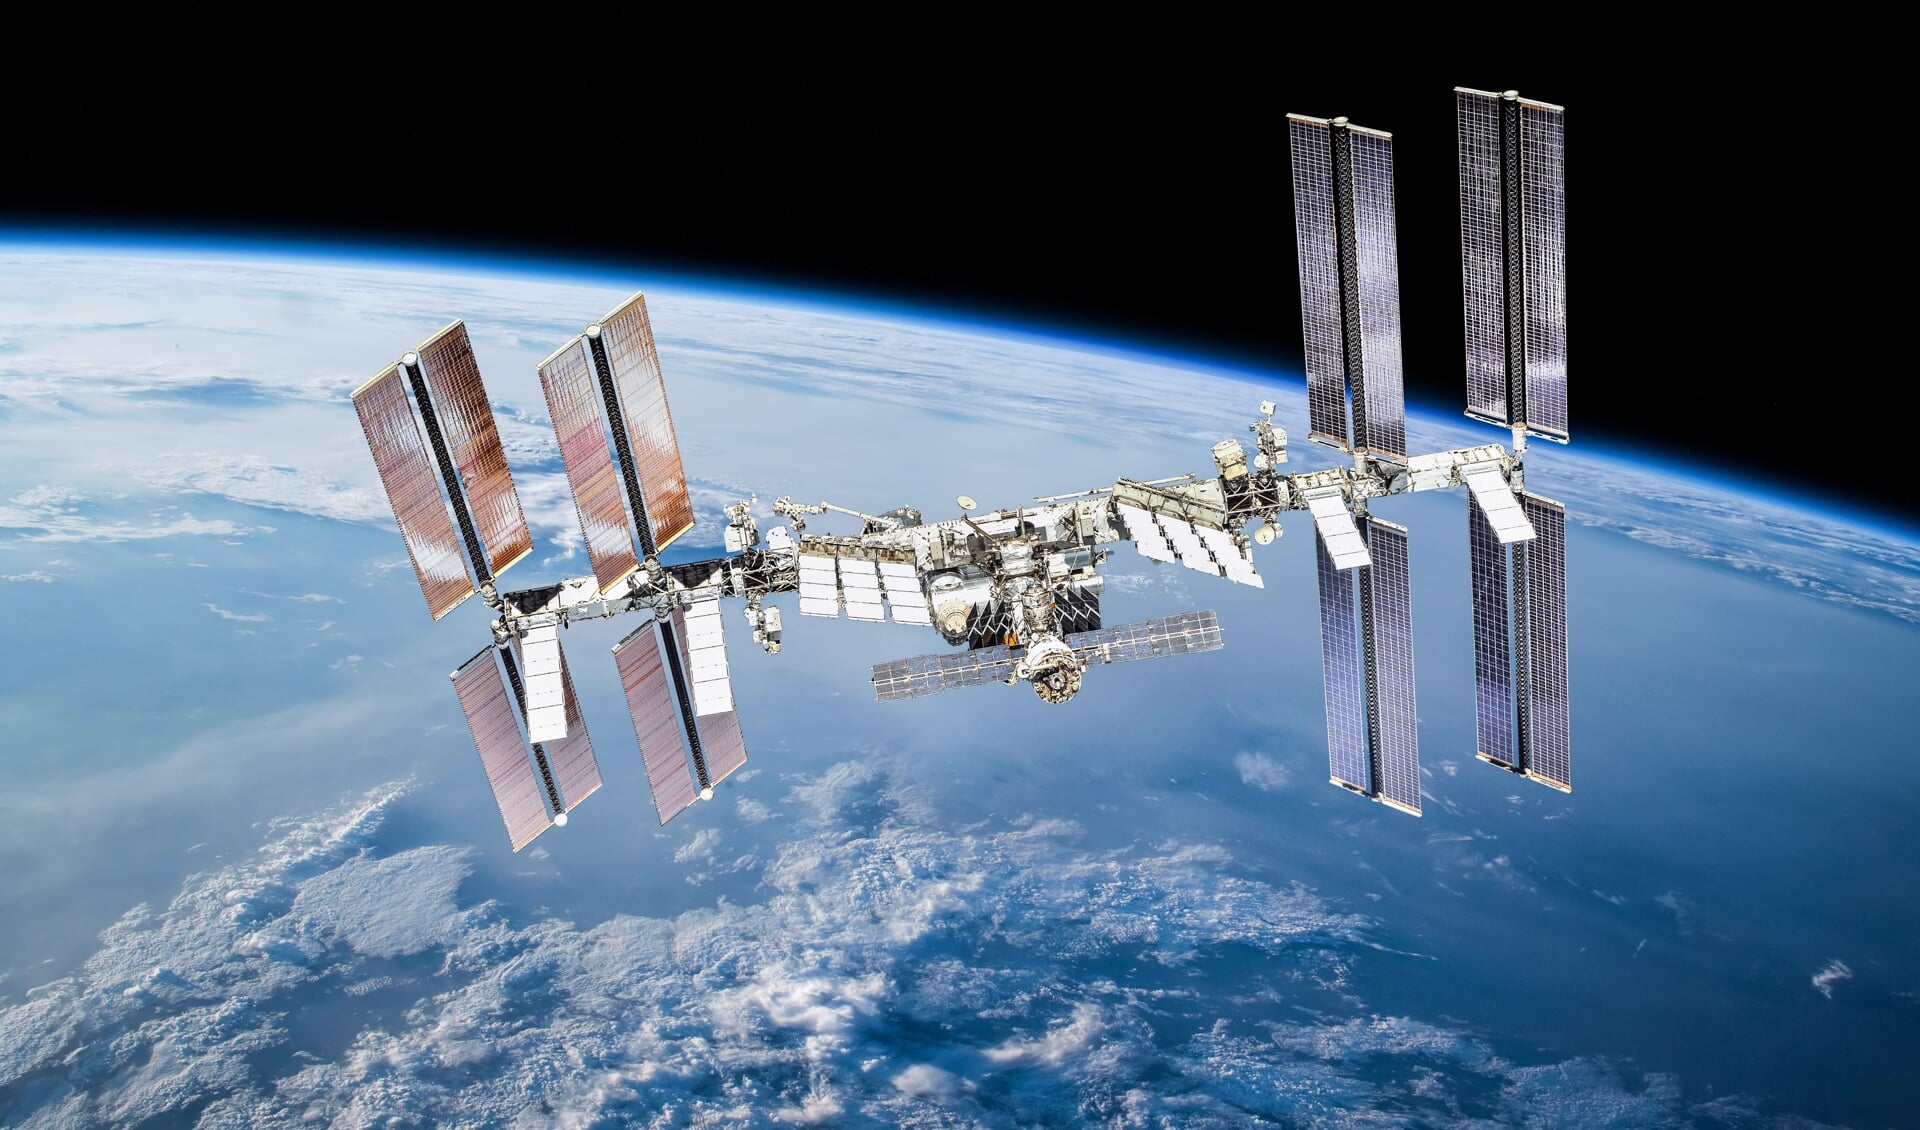 Het internationale ruimtestation is goed vanaf de aarde te zien. André Kuipers logeerde er van december 2011 tot juli 2012.